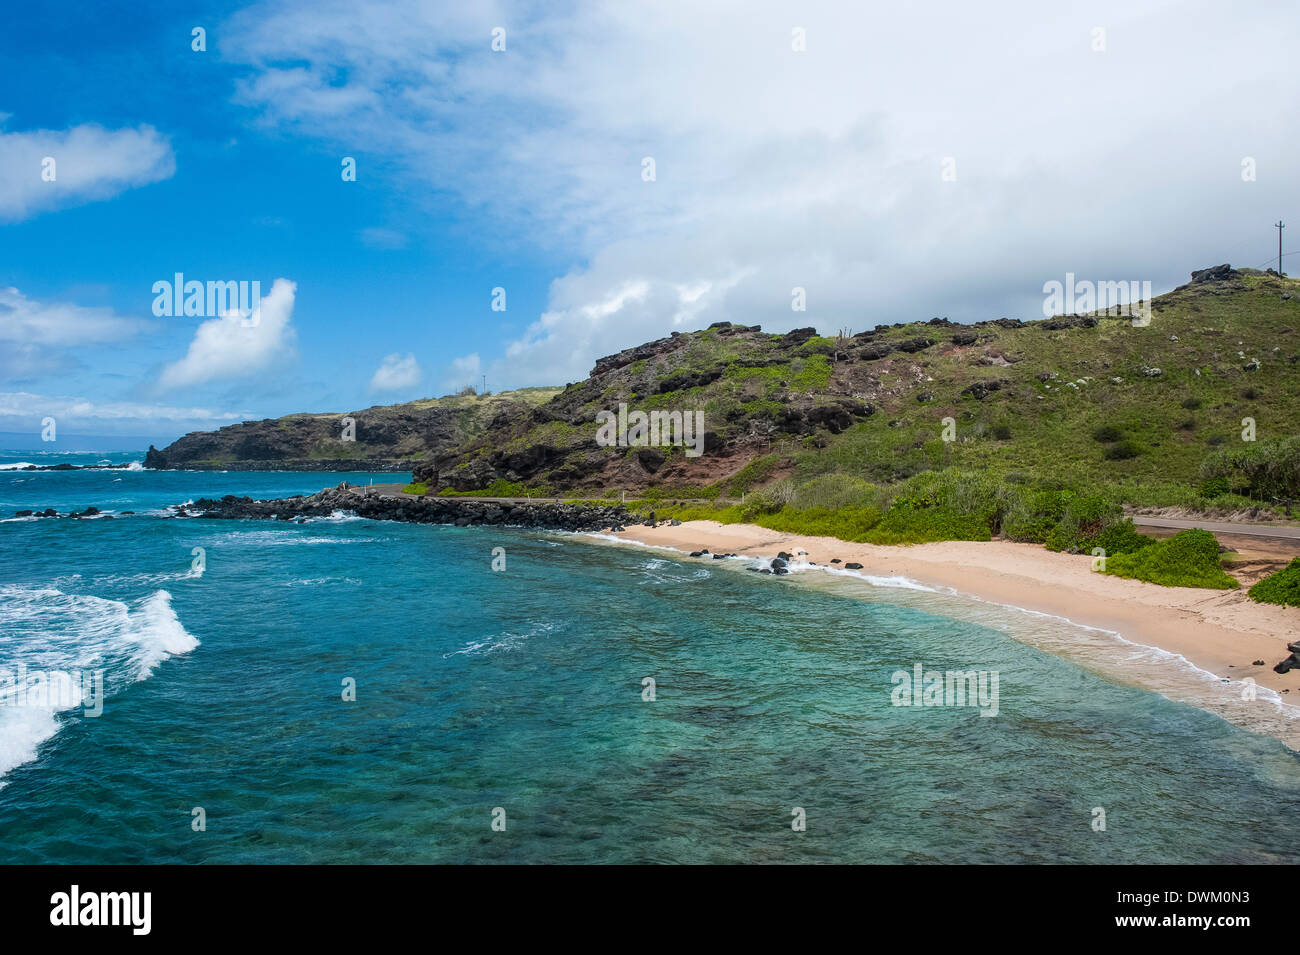 Plage de sable fin, l'île de Molokai, Hawaï, États-Unis d'Amérique, du Pacifique Banque D'Images